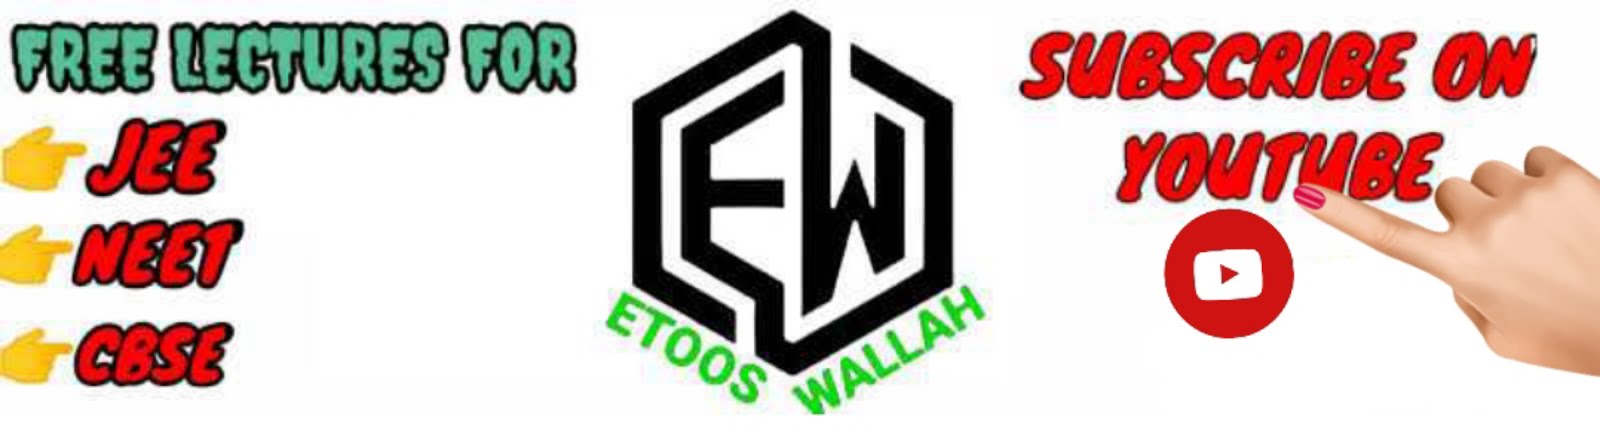               ETOOS WALLAH